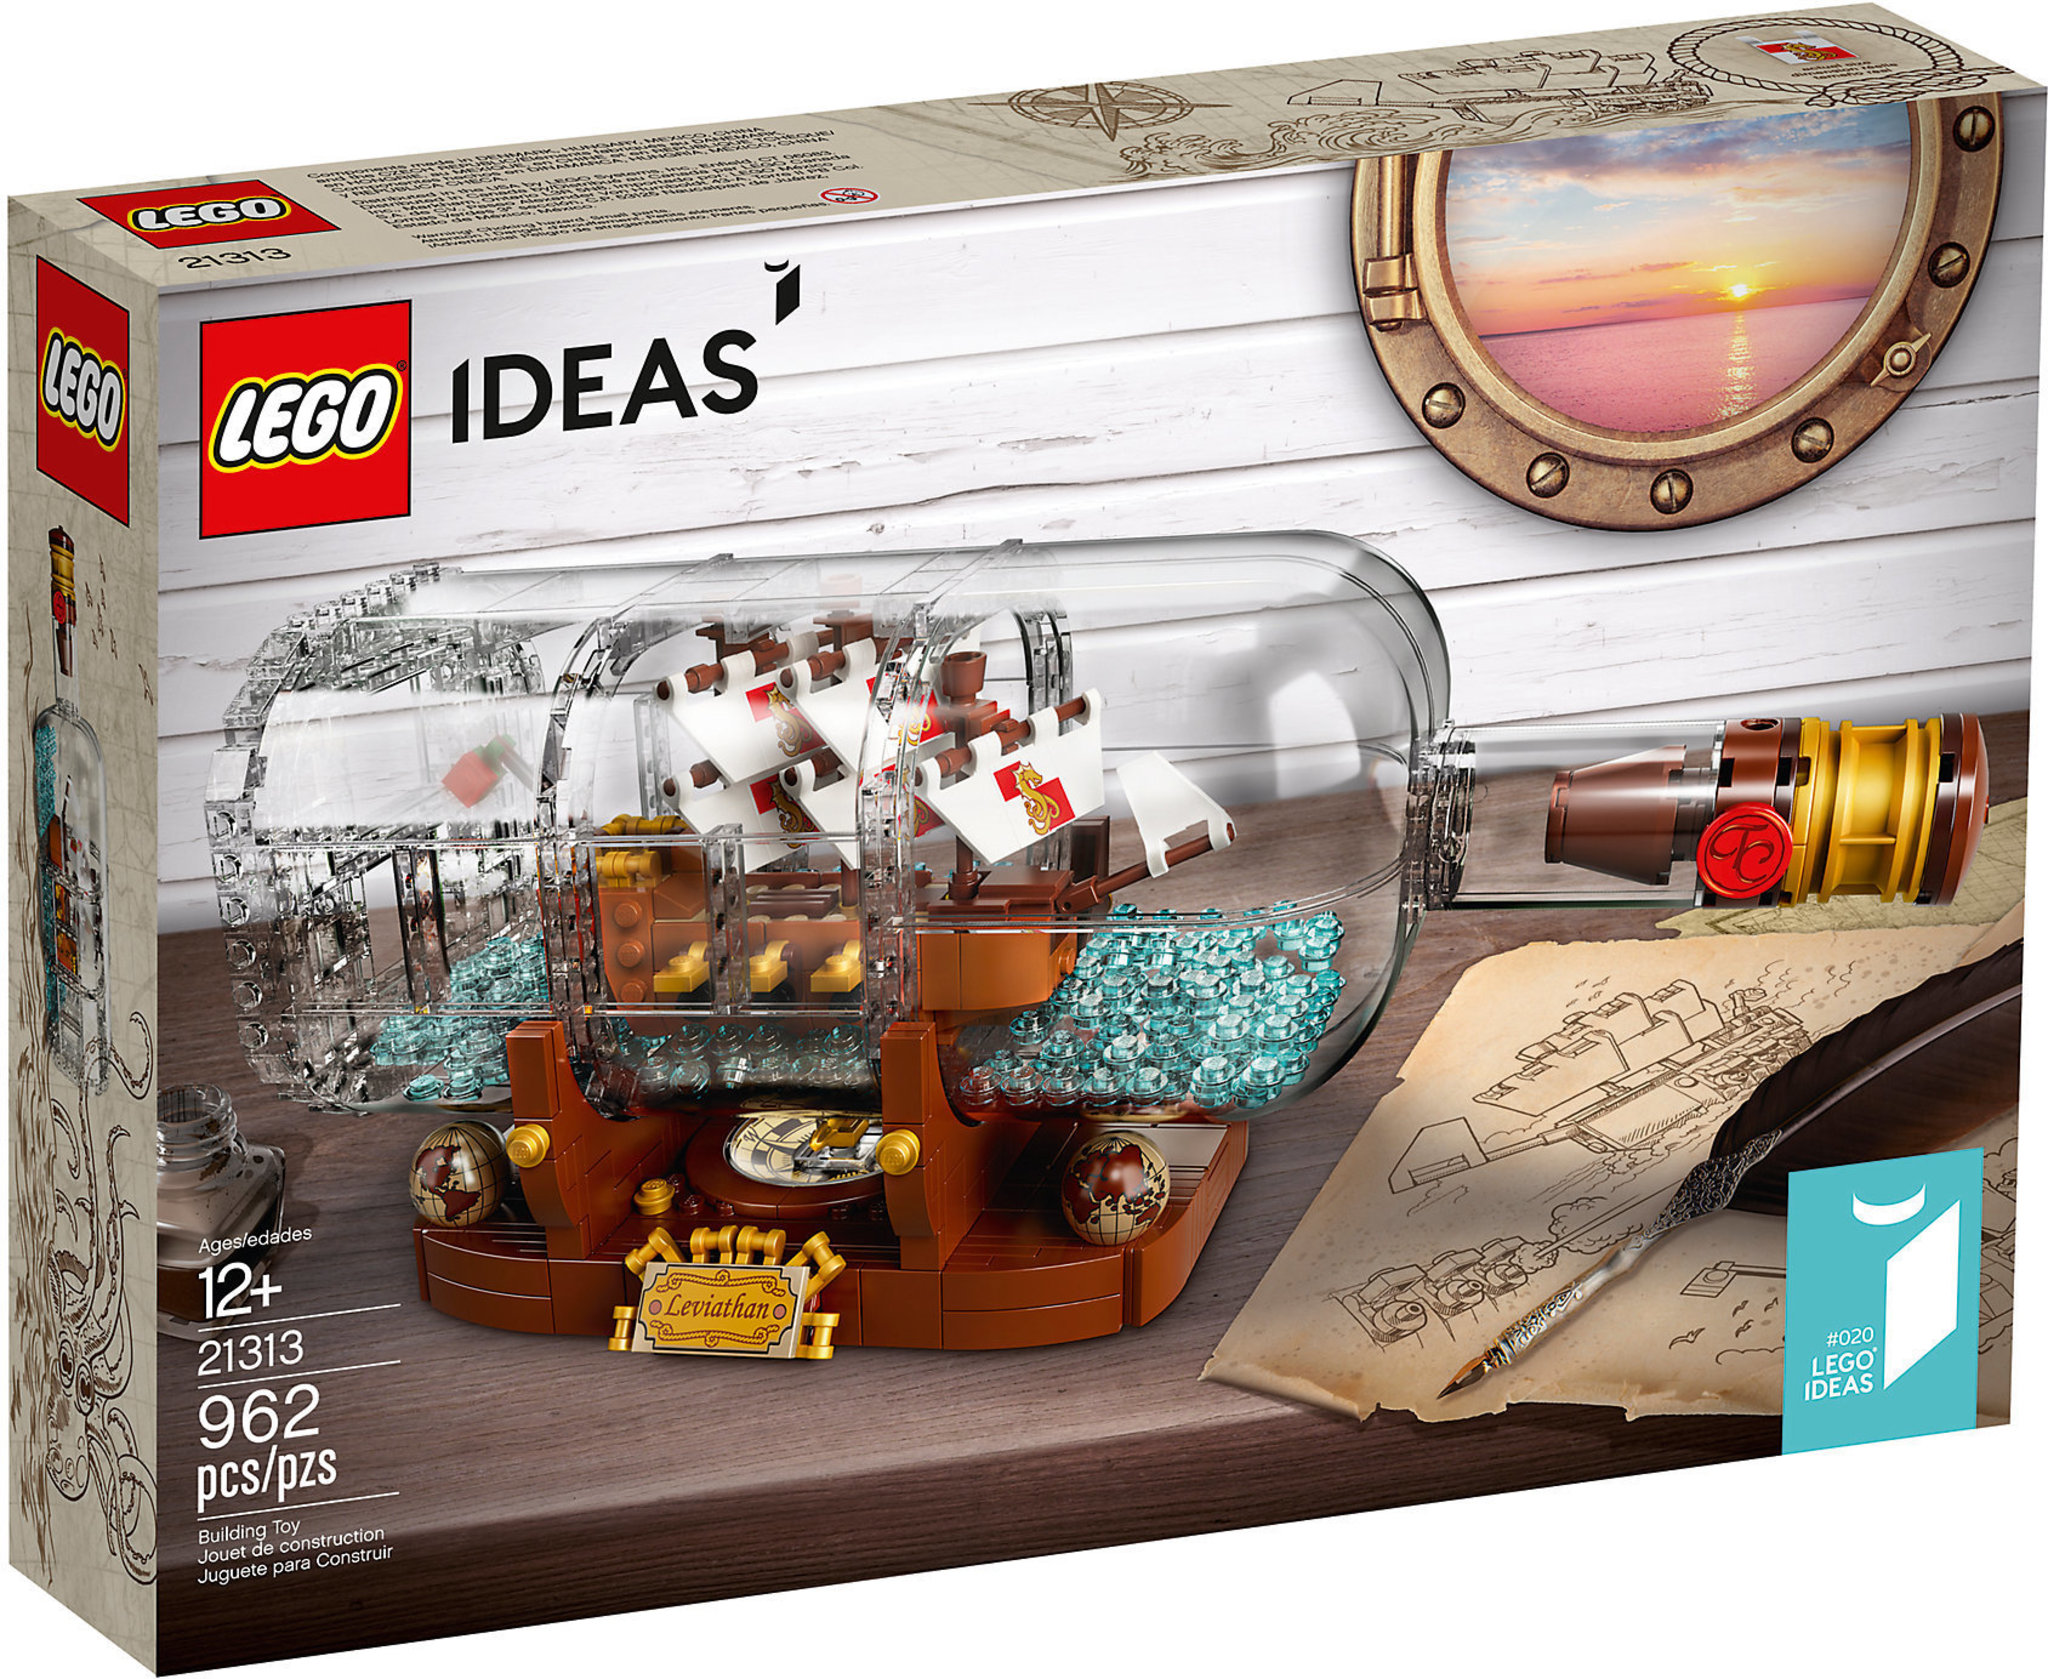 Recensione LEGO Ideas 21313 - Nave In Bottiglia - Mattonito